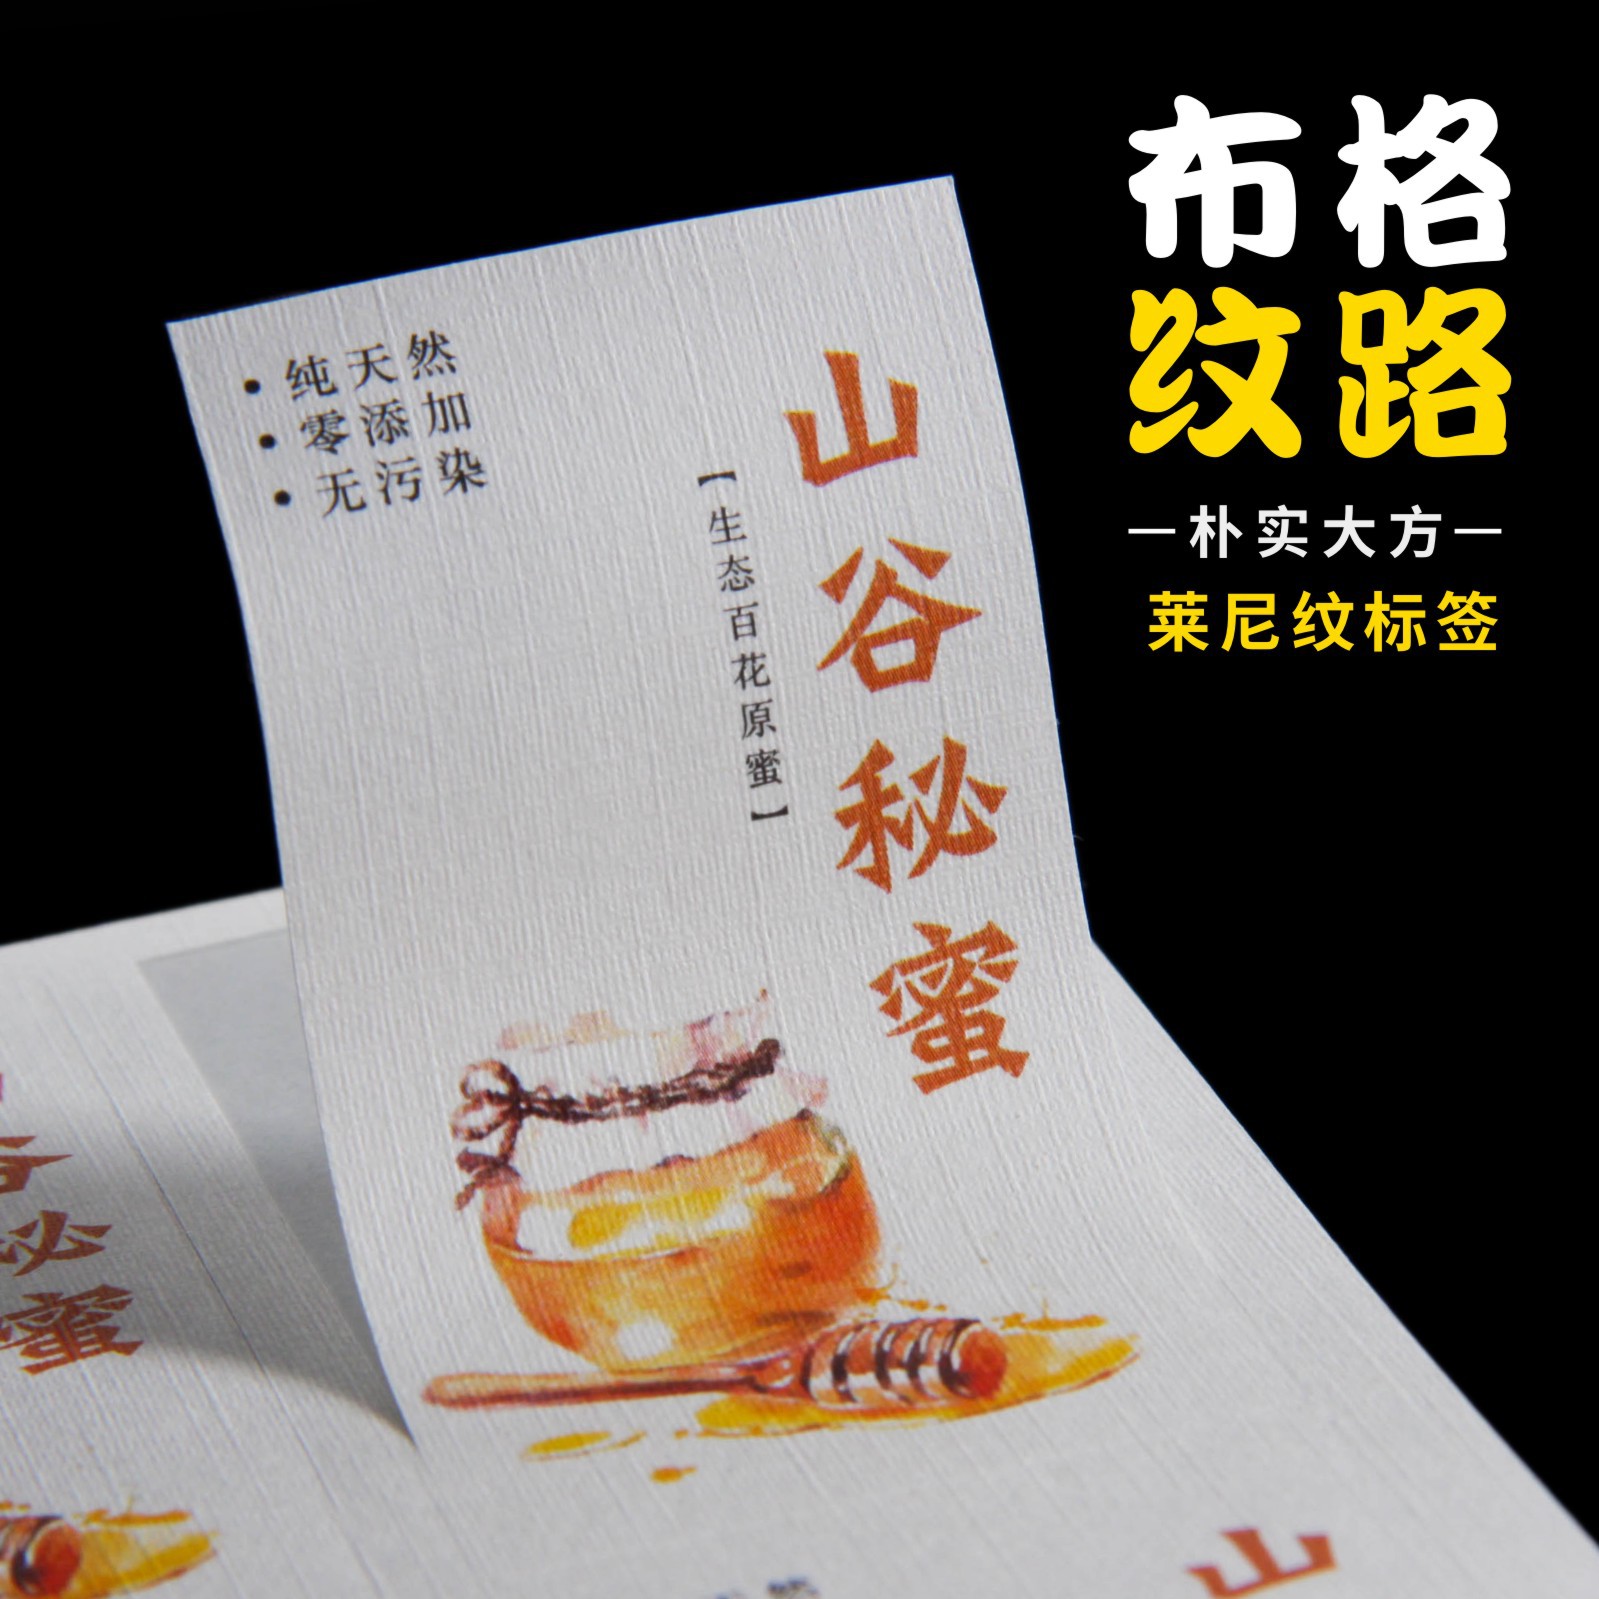 莱尼纹不干胶标签定制食品蜂蜜酒标订制纹路标贴定做商标贴纸印刷